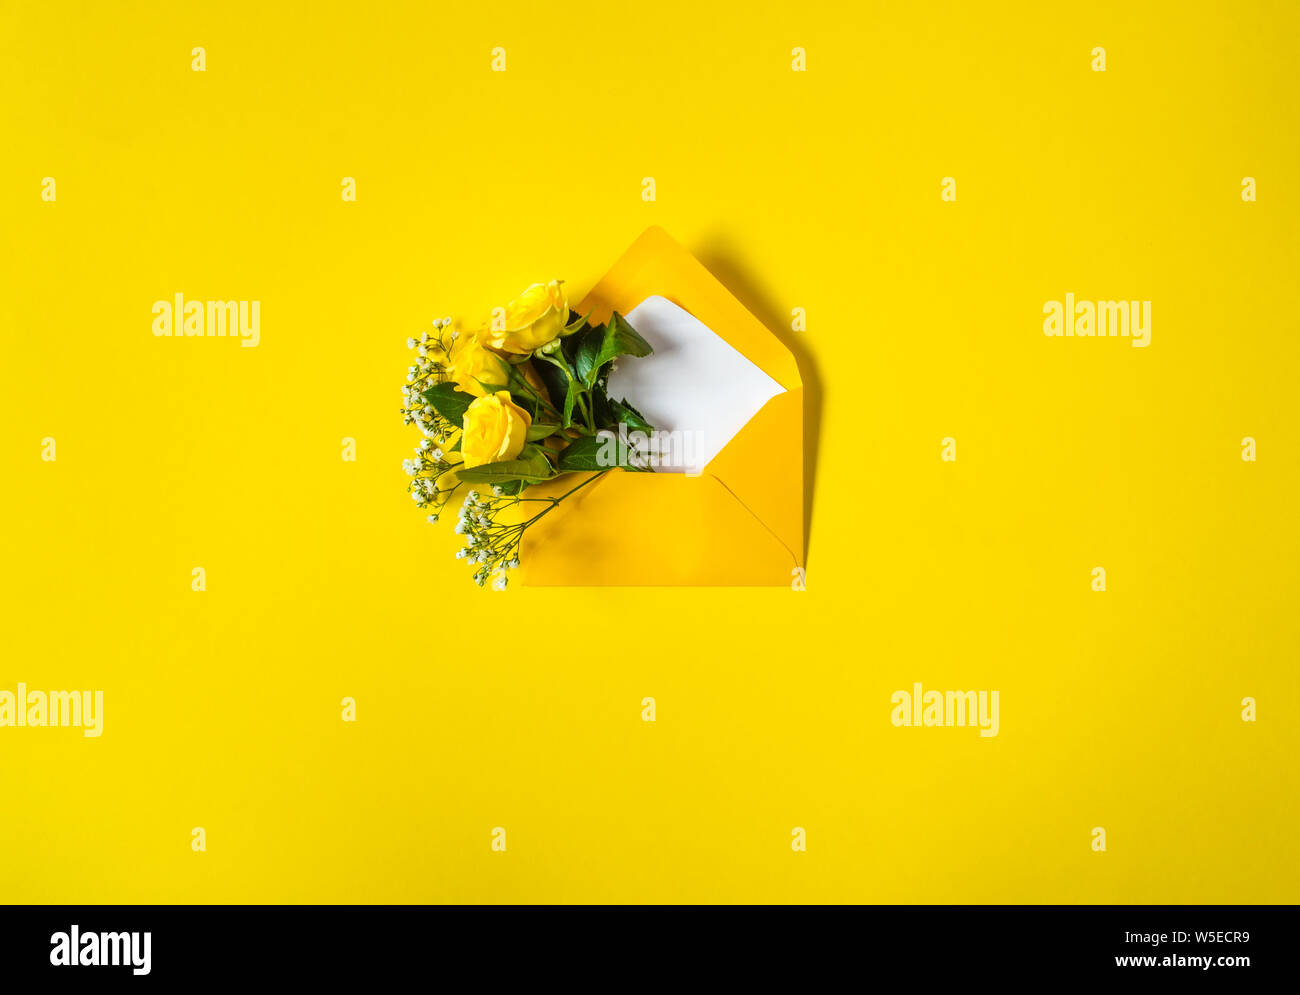 Umschlag mit gelben Rosen und kleinen weissen Blüten Gypsophila auf gelbem Hintergrund geöffnet. Ansicht von oben, flach. Konzept der senden Grüße, Liebe, frien Stockfoto